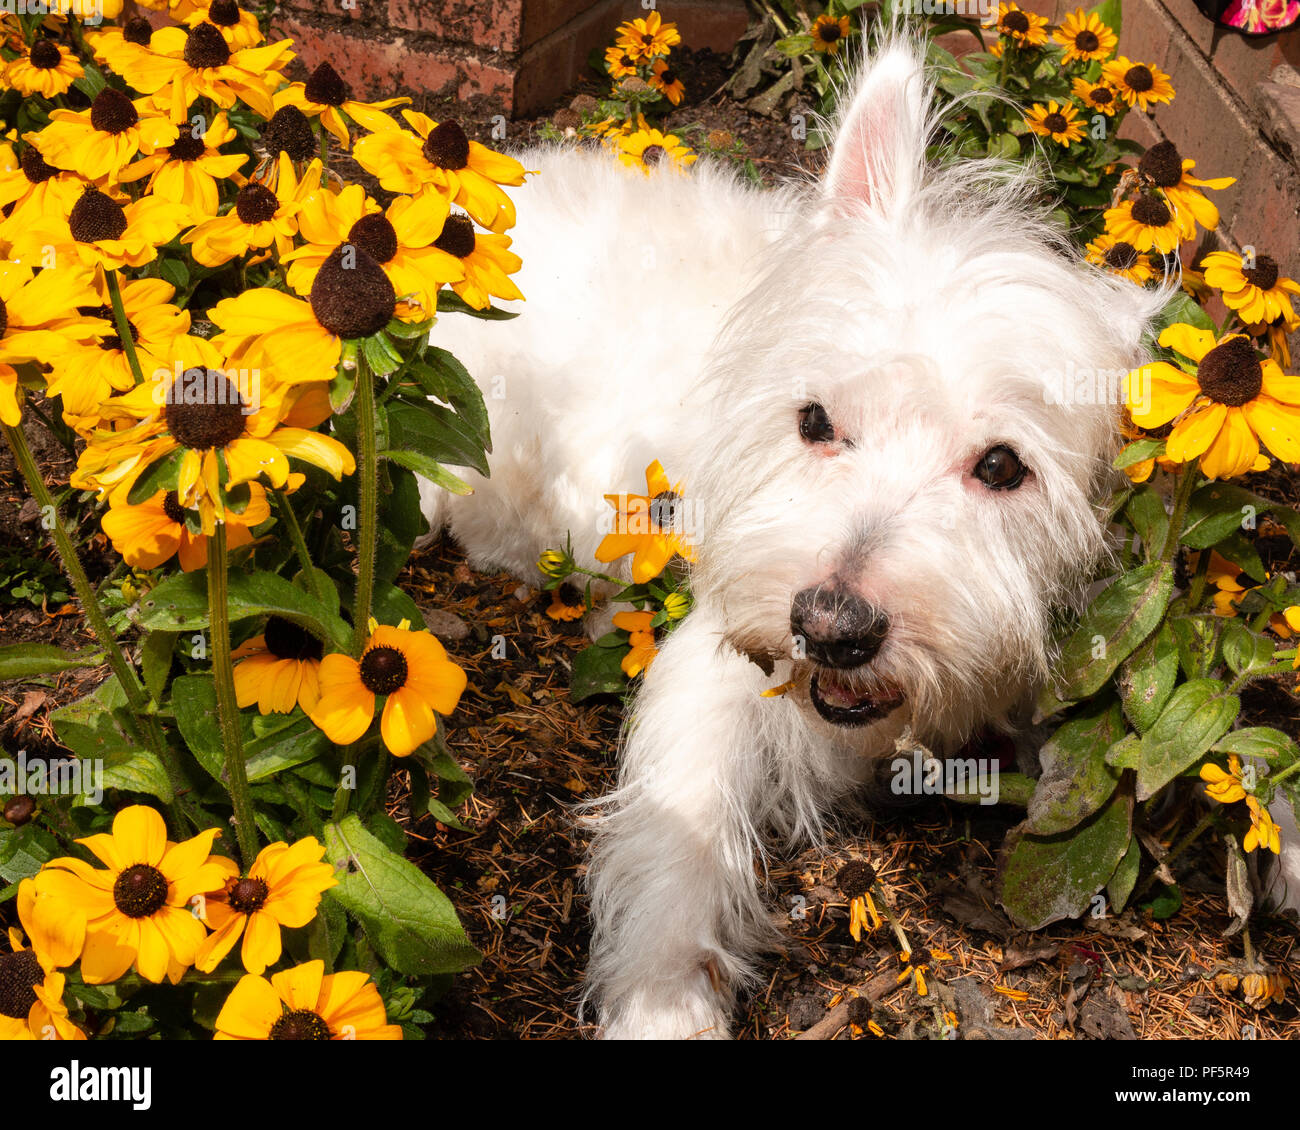 Carino e cordiale, West Highland White Terrier,Westie, cane giacente in campi di girasoli in giardino Foto Stock